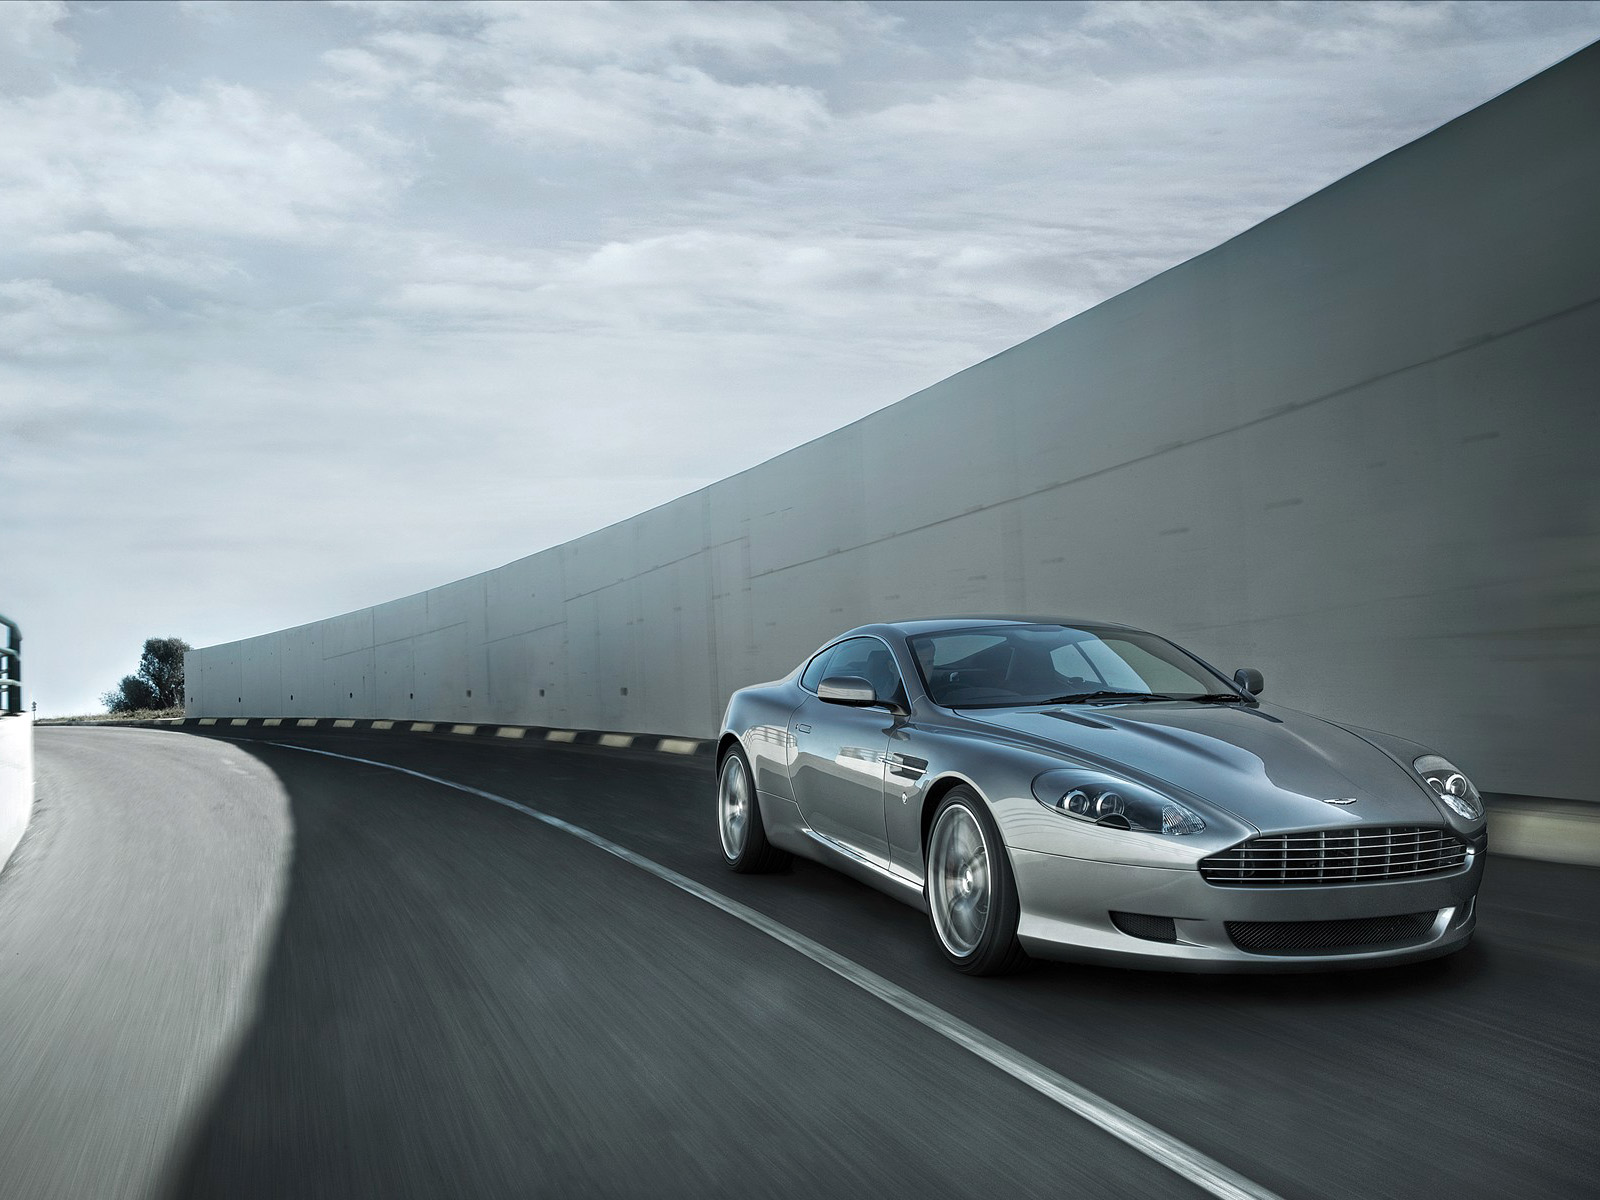 Descarga gratuita de fondo de pantalla para móvil de Aston Martin Db9, Aston Martin, Vehículos.